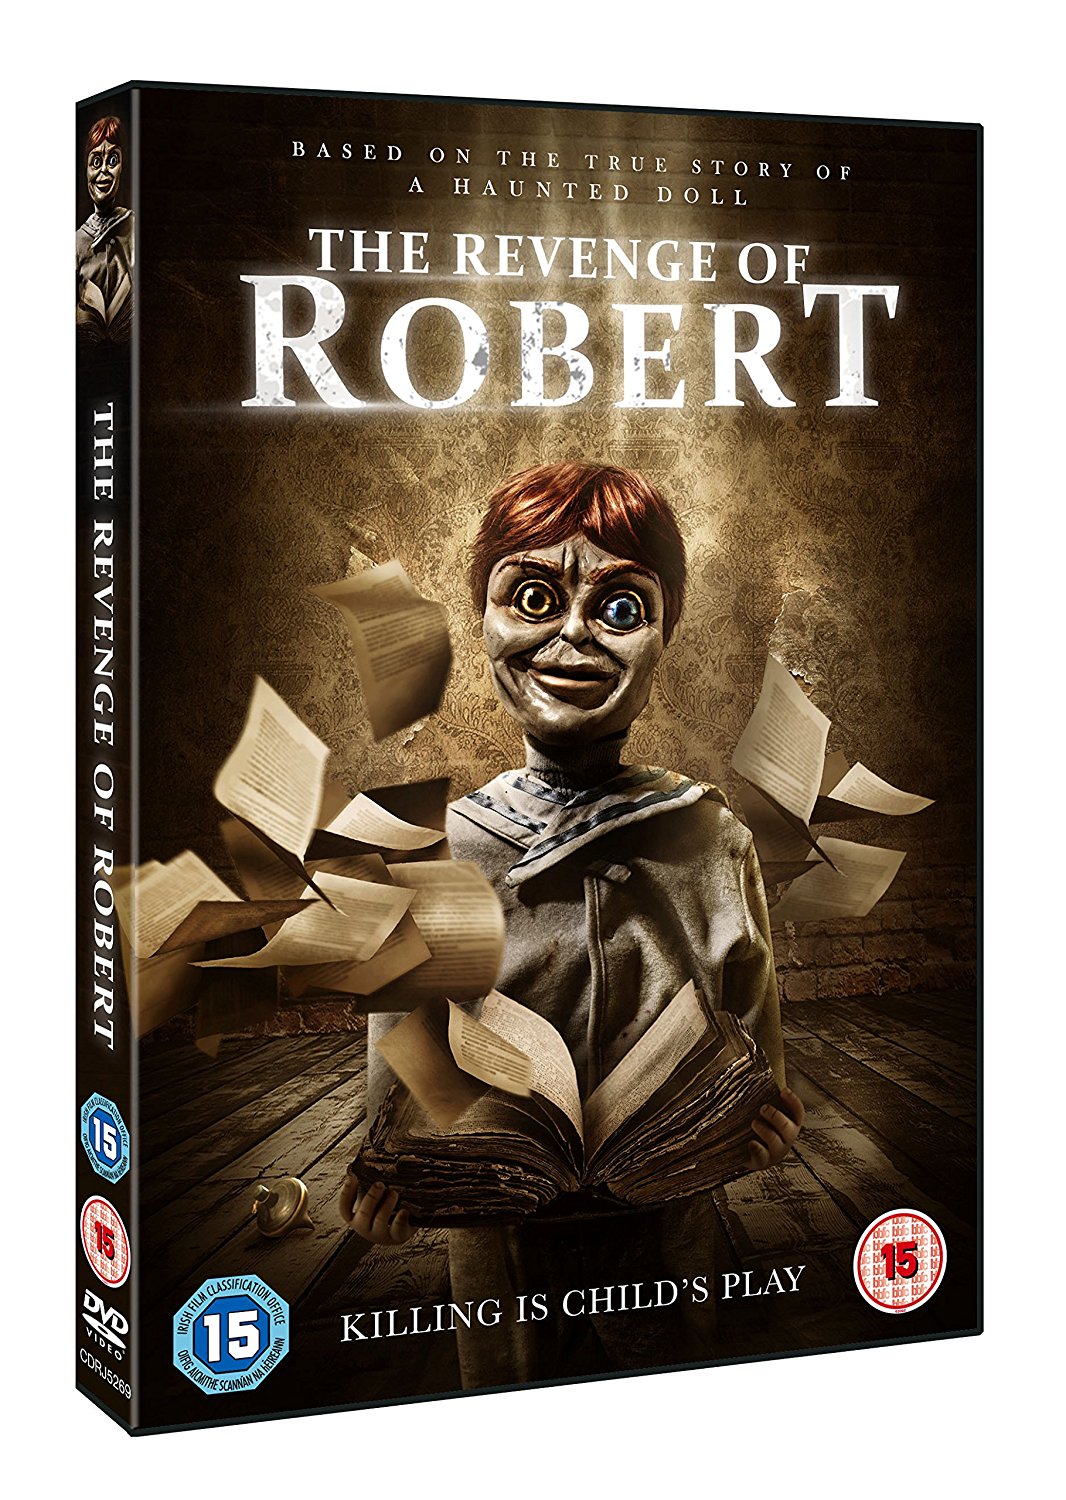 The Revenge Of Robert - UK DVD art